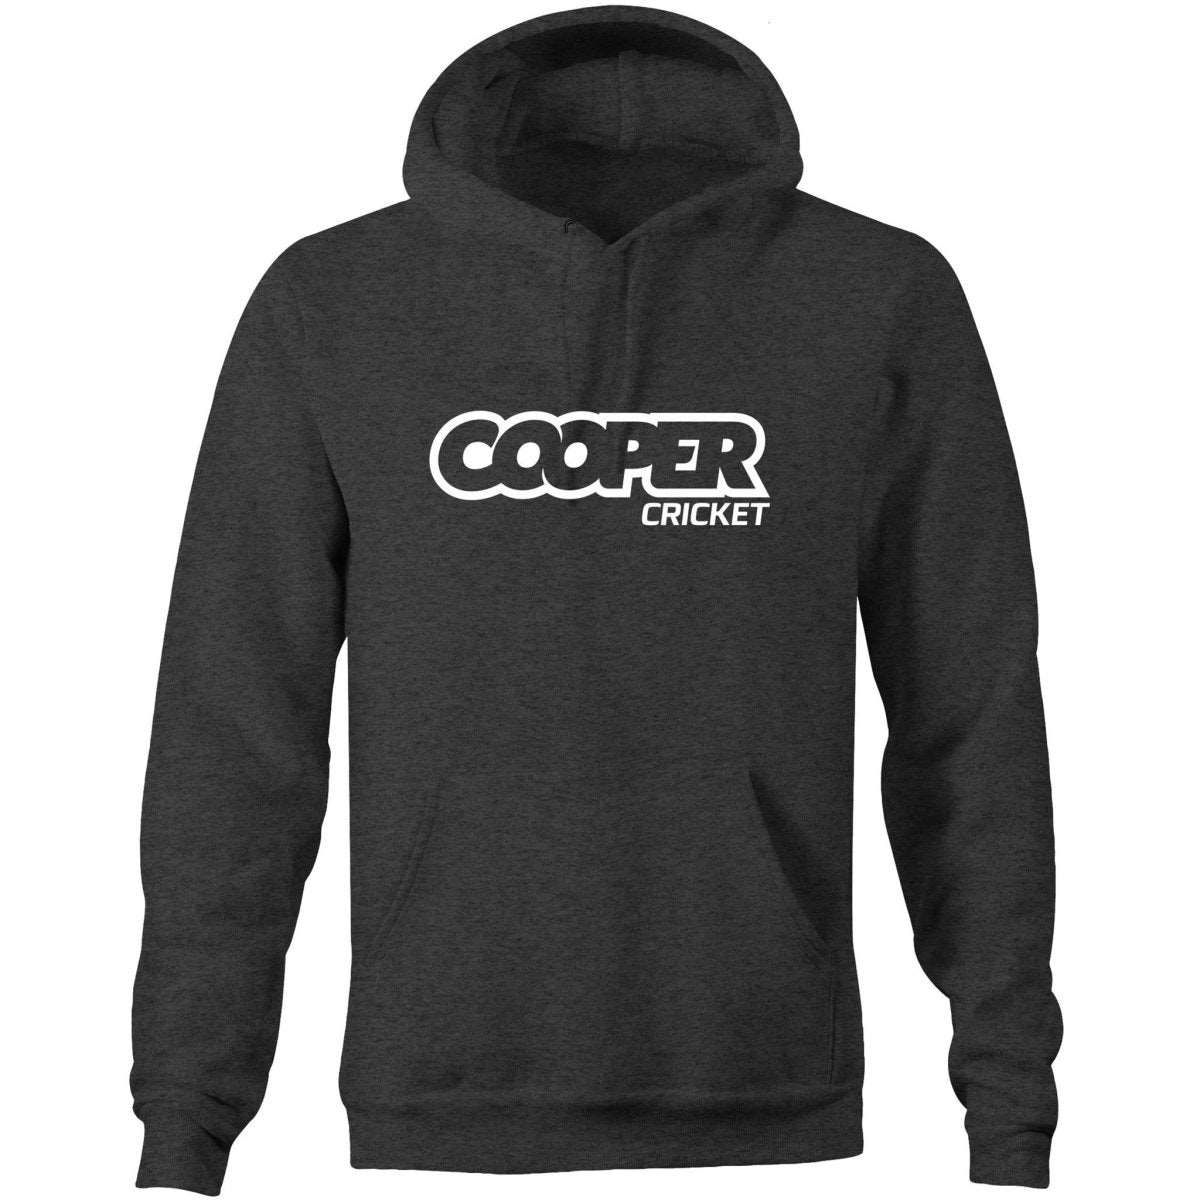 COOPER CRICKET HOODIE - Cooper Cricket